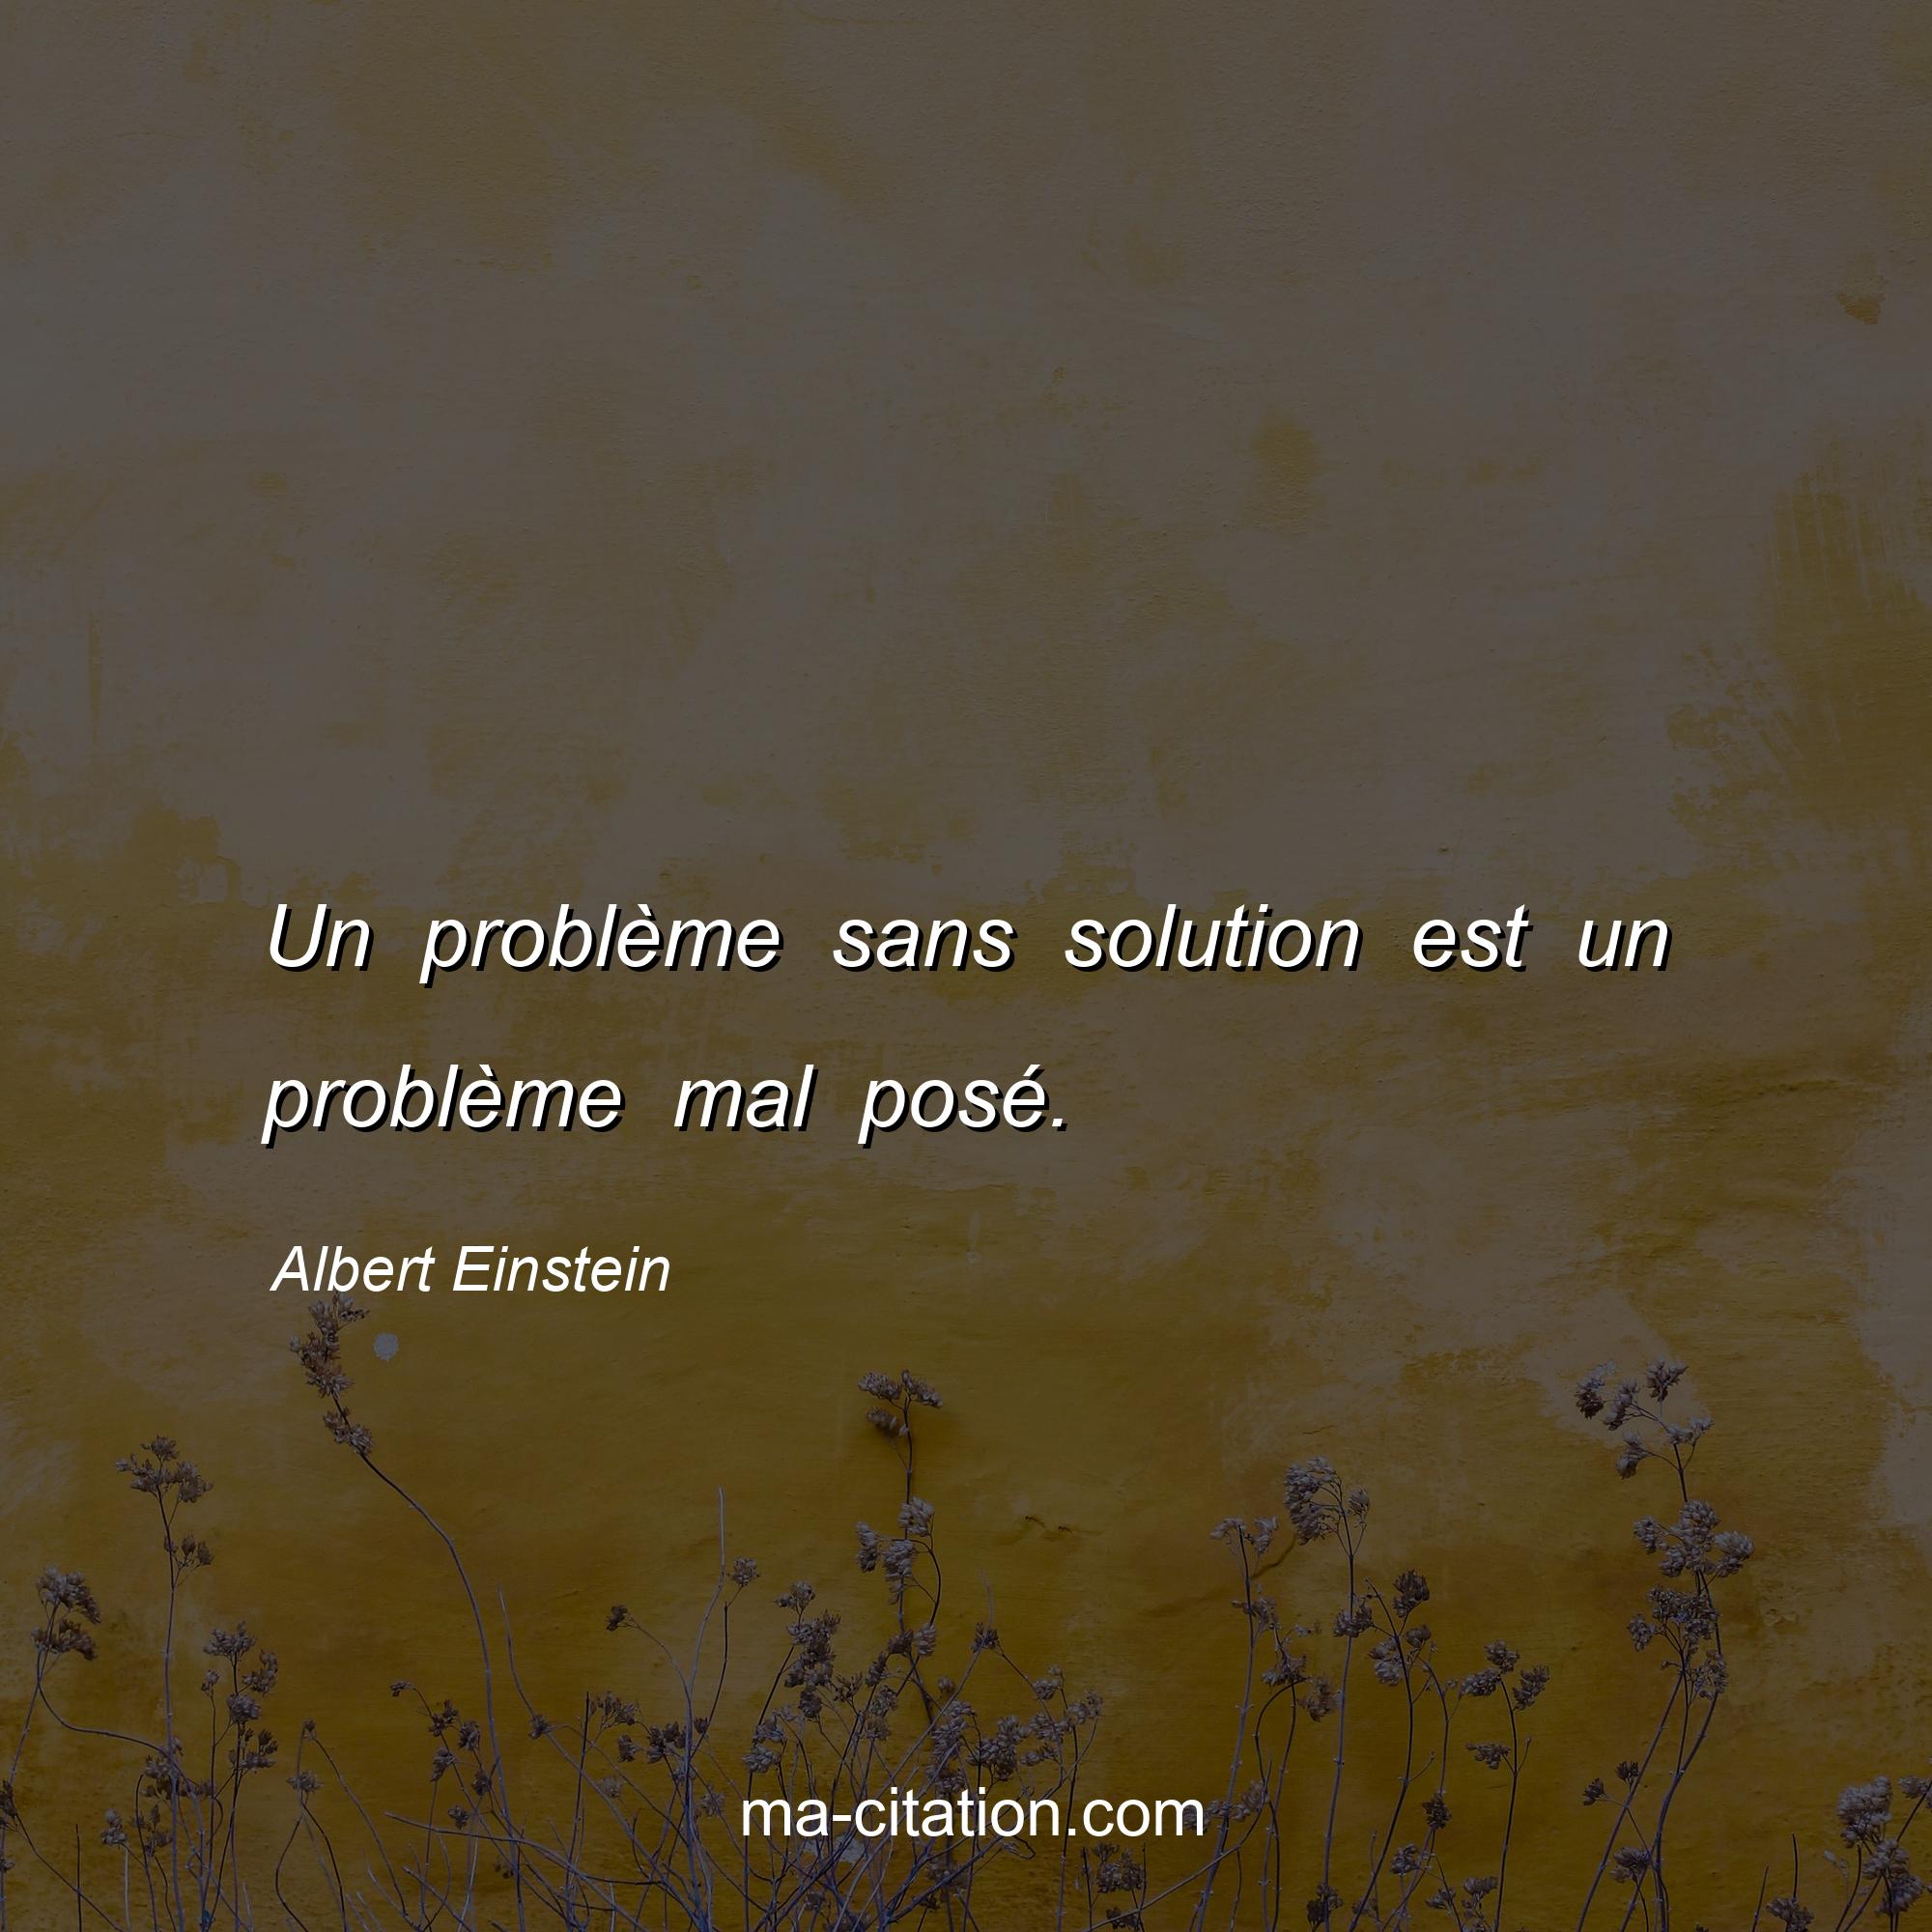 Albert Einstein : Un problème sans solution est un problème mal posé.